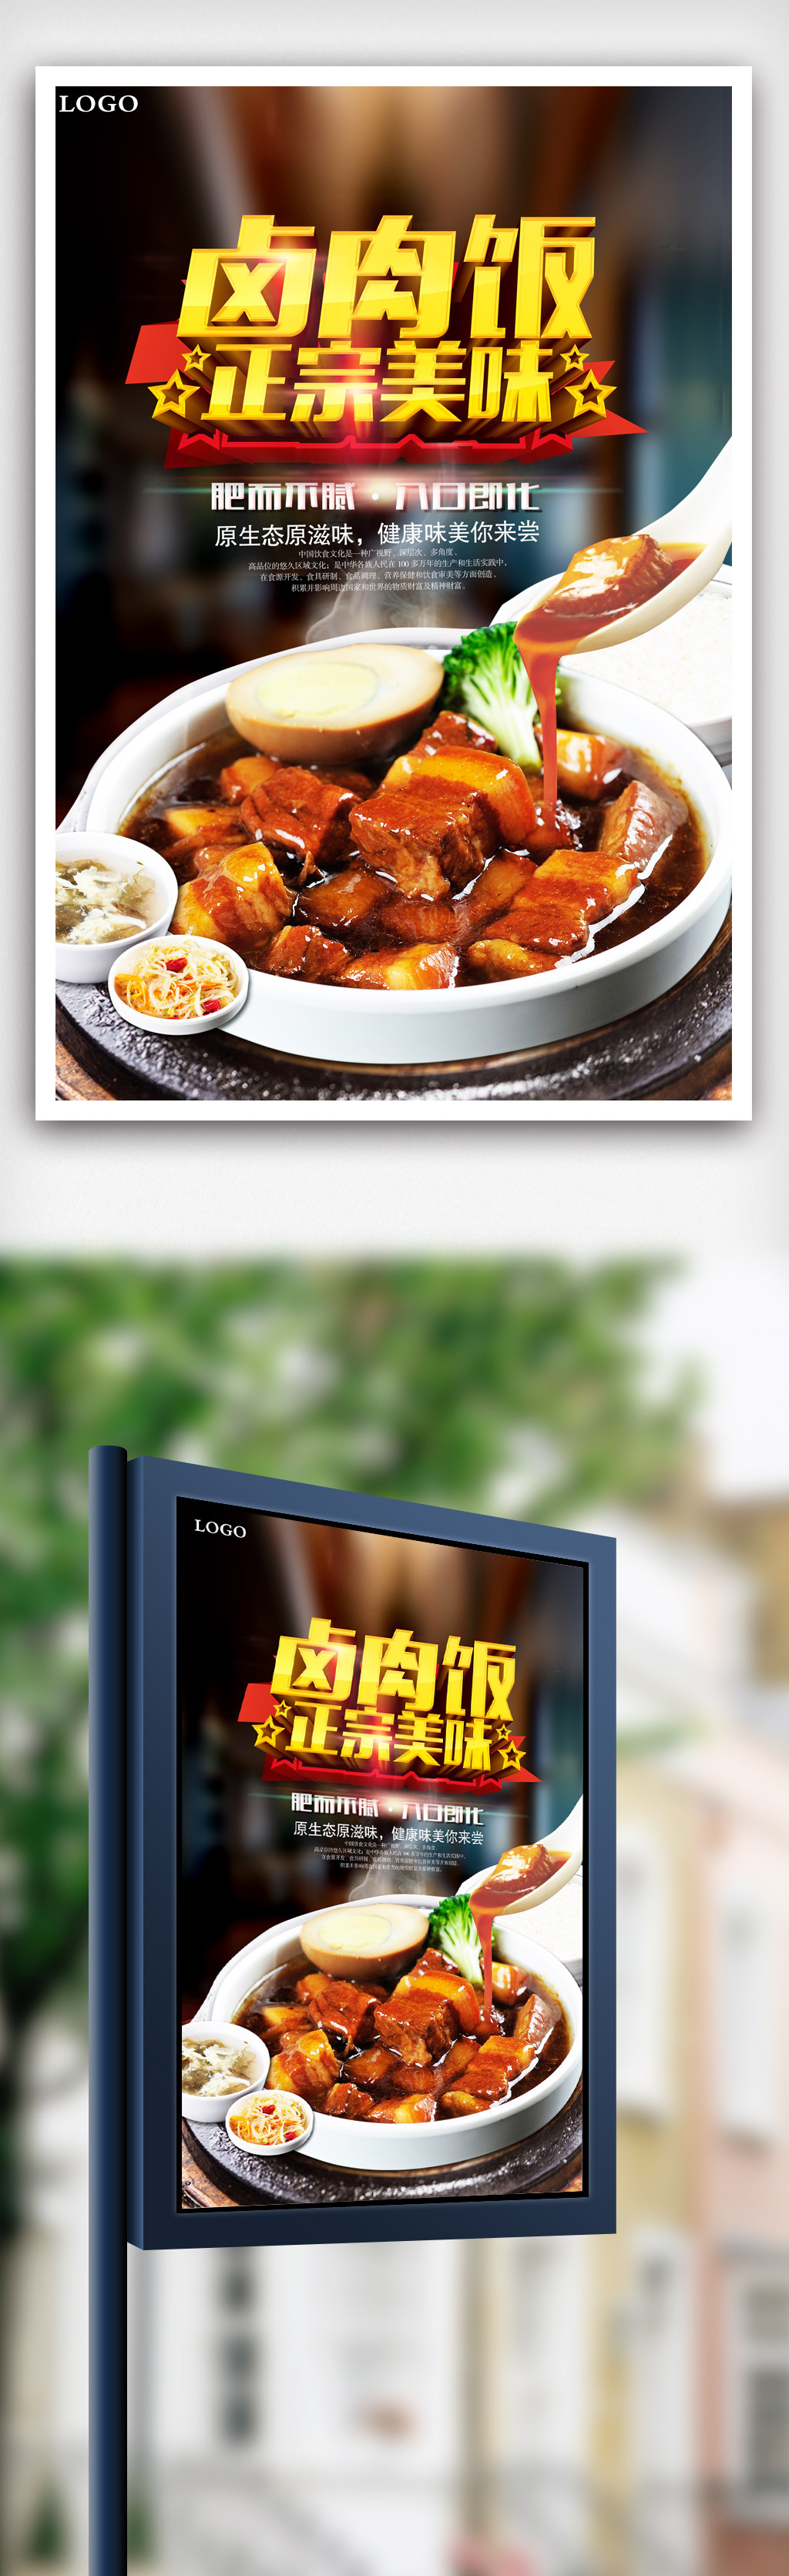 台湾美食卤肉饭宣传海报设计模版.psd图片